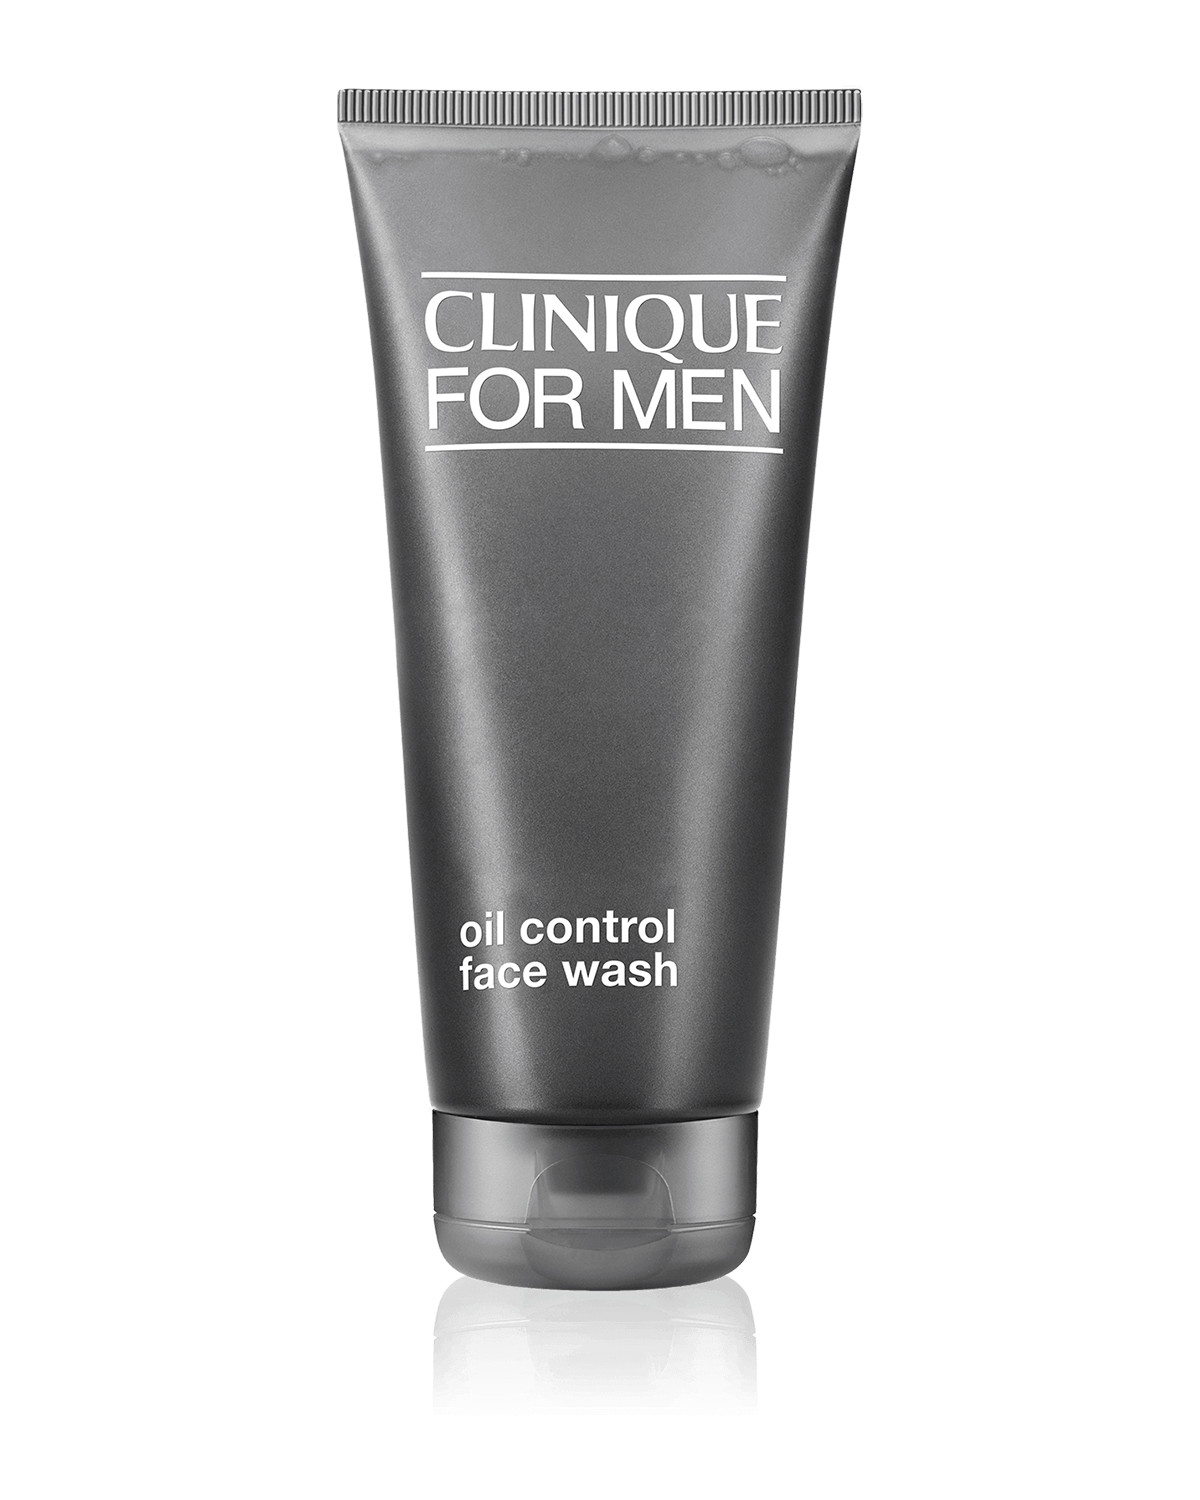 Clinique For Men™ Oil Control Face Wash